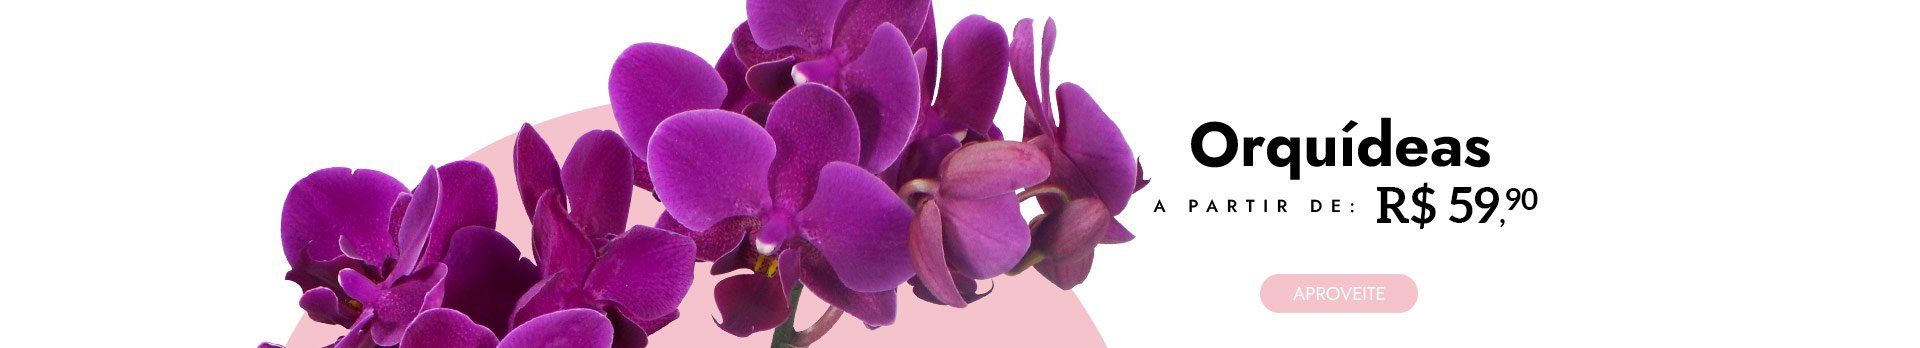 Orquídeas a partir de R$59,90